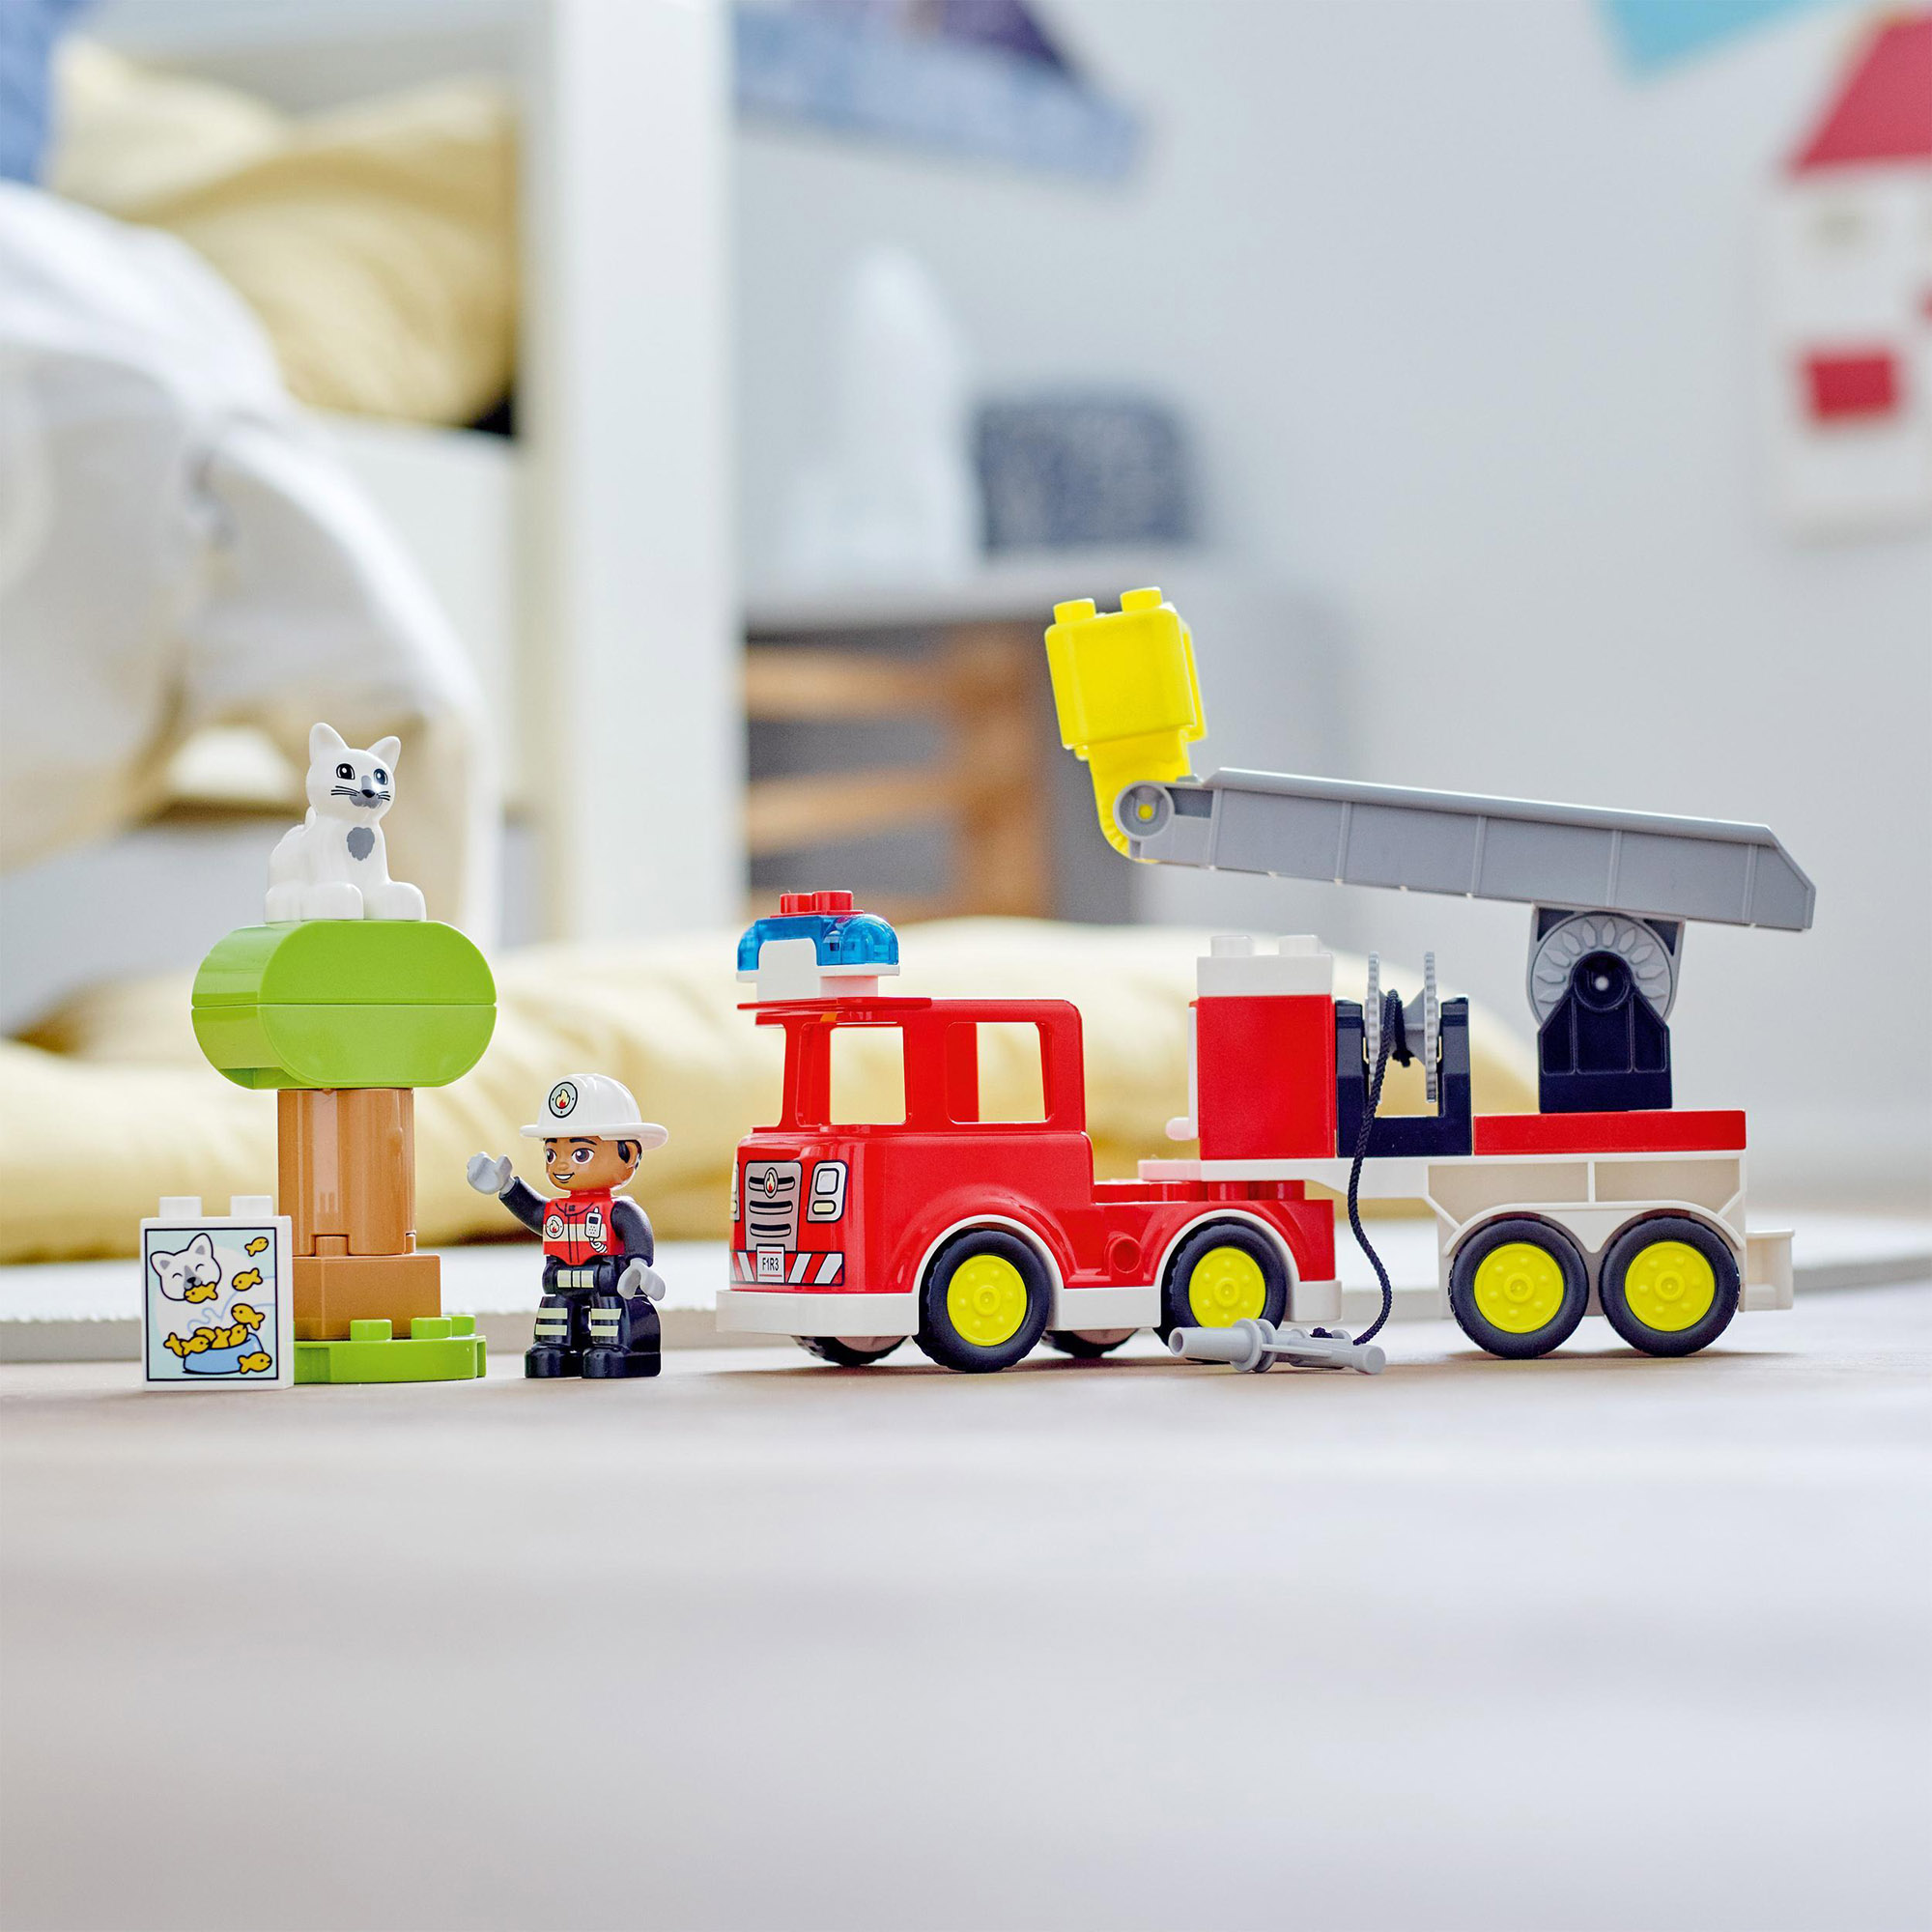 LEGO DUPLO Town Autopompa, Camion con Luci e Sirena, Pompiere e Gatto, Gioco educativo - LEGO